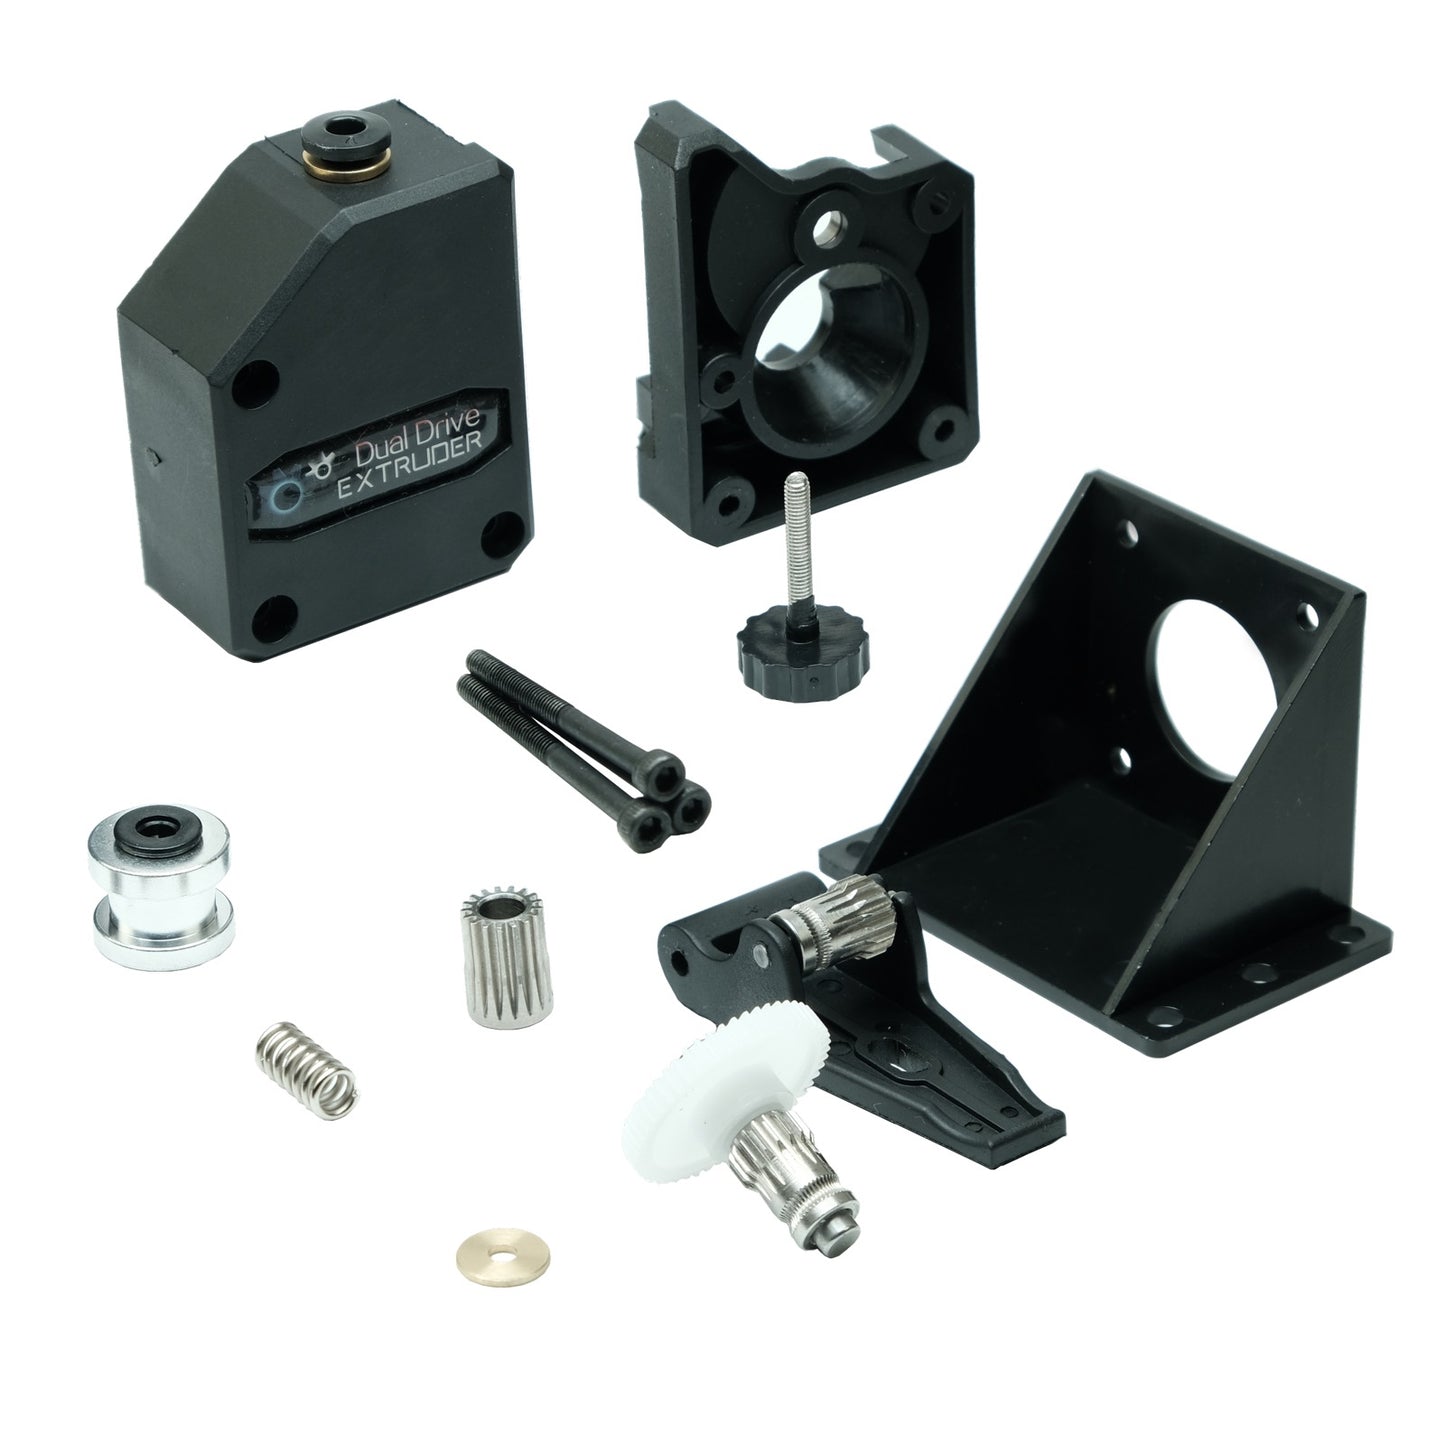 BMG Extruder, Dual Drive Bowden Extruder für 3D Drucker und 1,75mm Filament